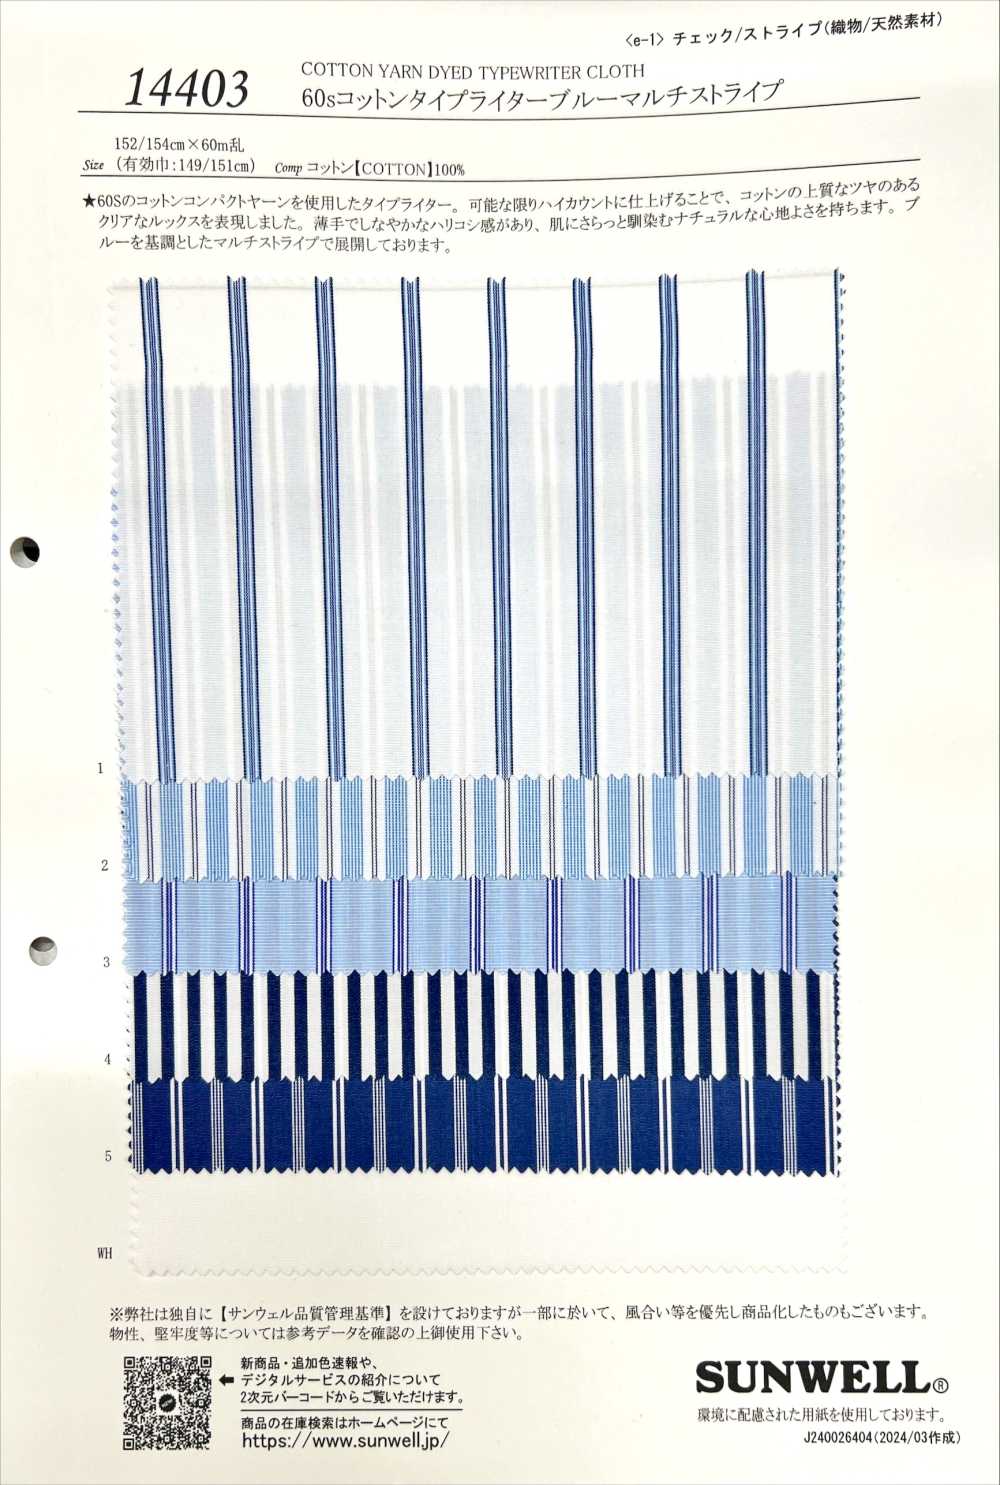 14403 60 Einfädiges Schreibmaschinentuch, Blau, Mehrfarbig[Textilgewebe] SUNWELL